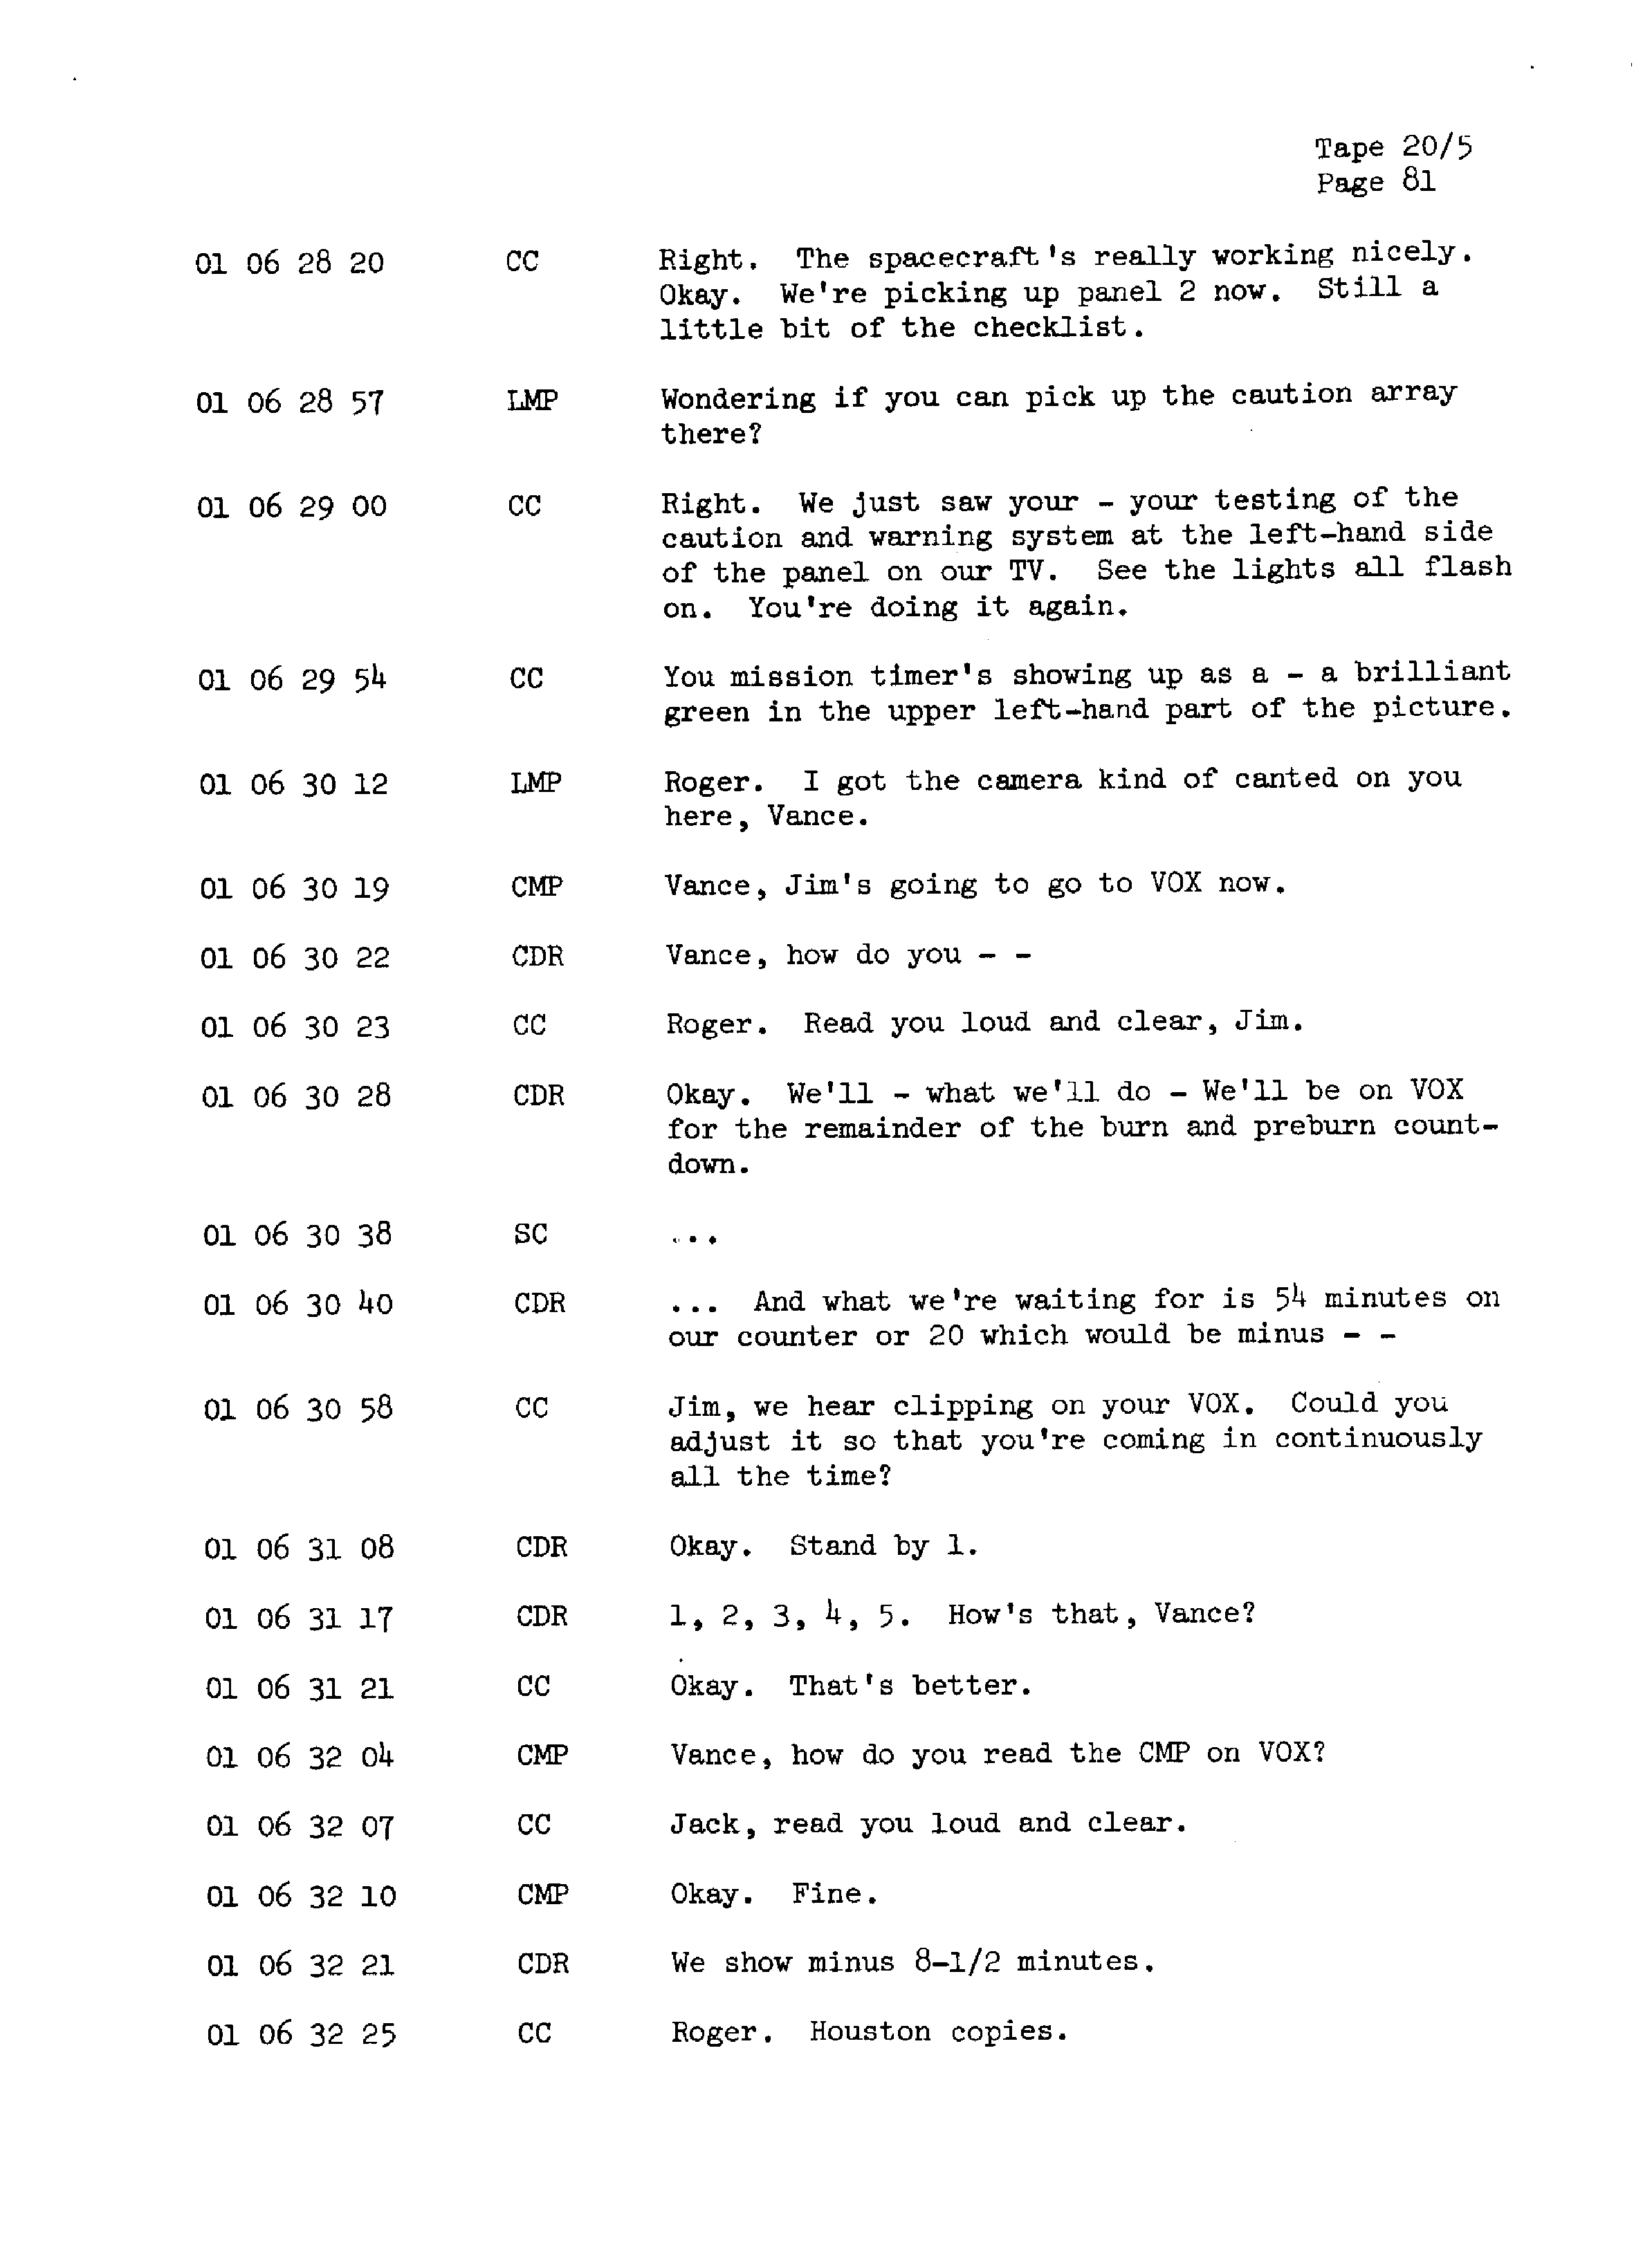 Page 88 of Apollo 13’s original transcript